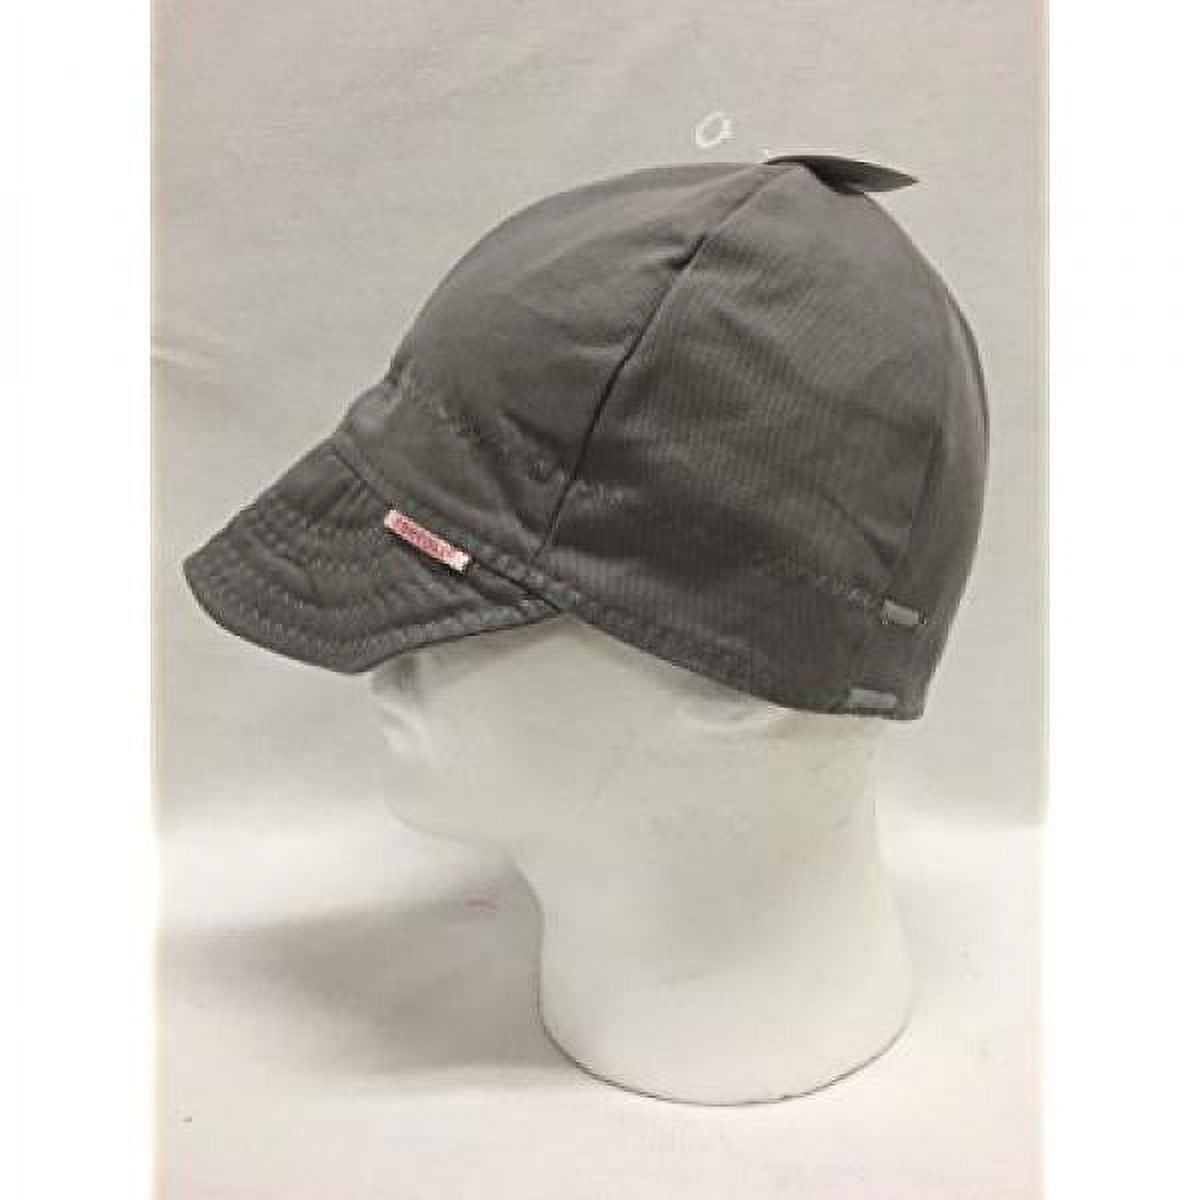  Comeaux Caps Reversible Welding Cap Solid Black 7 1/4